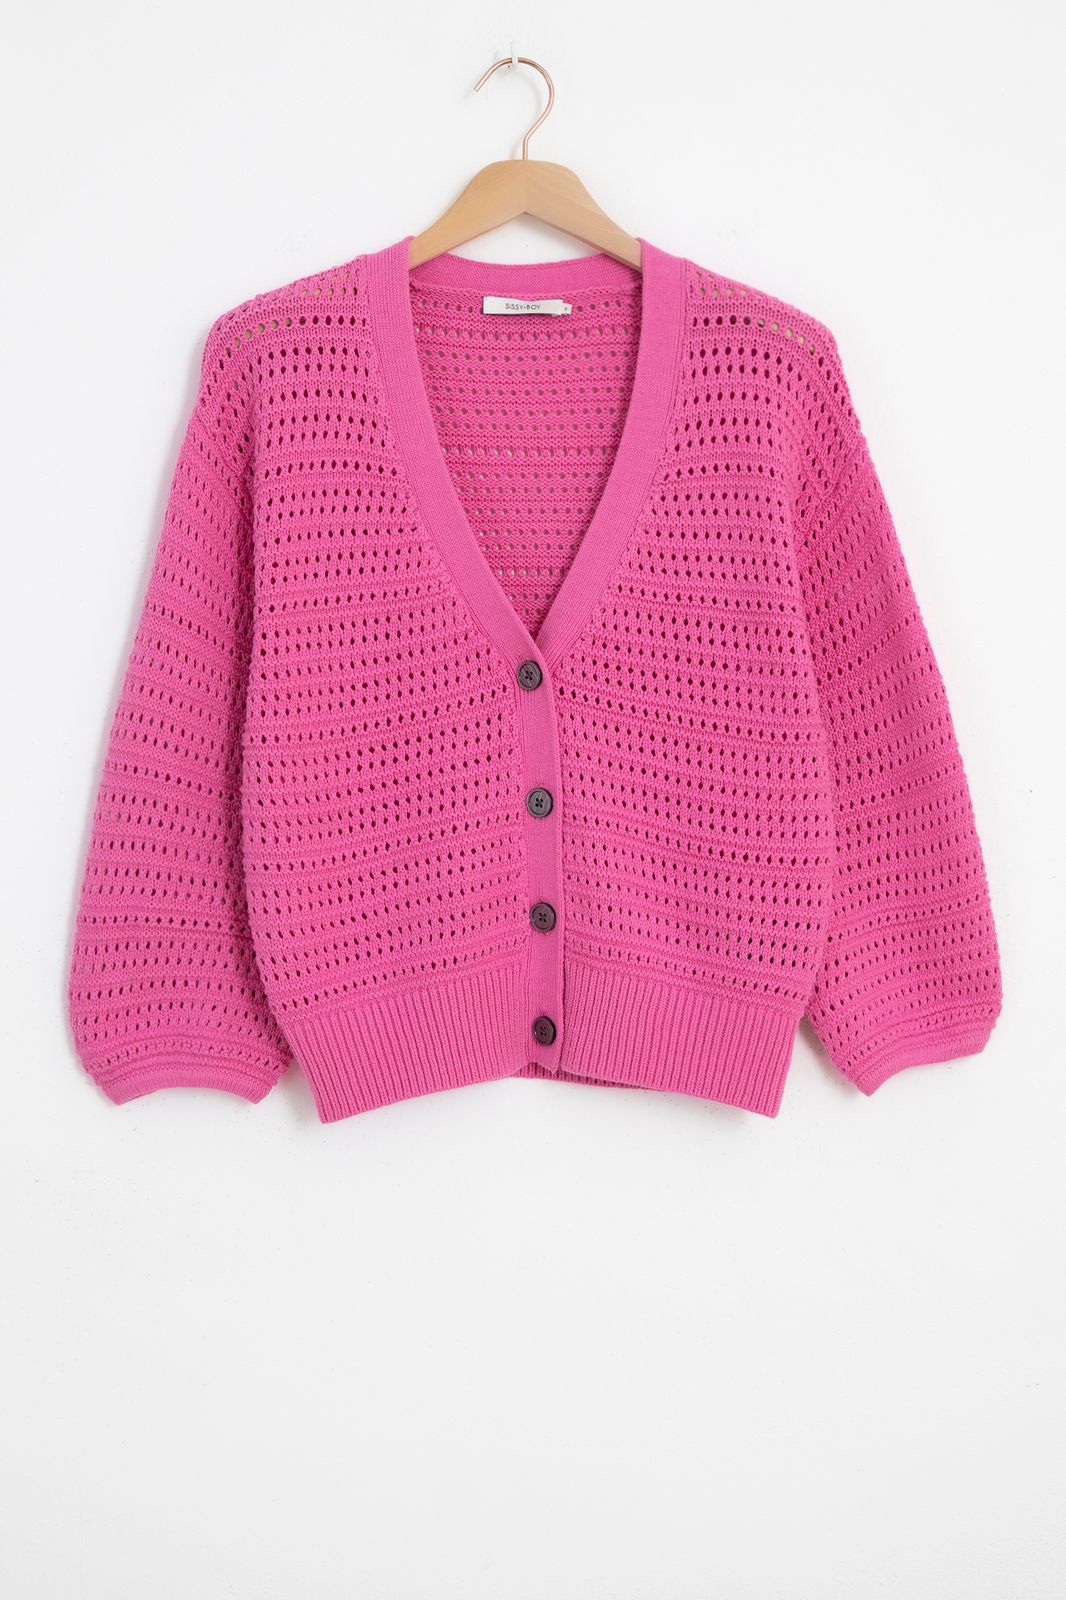 Gilet tricoté avec boutons - rose